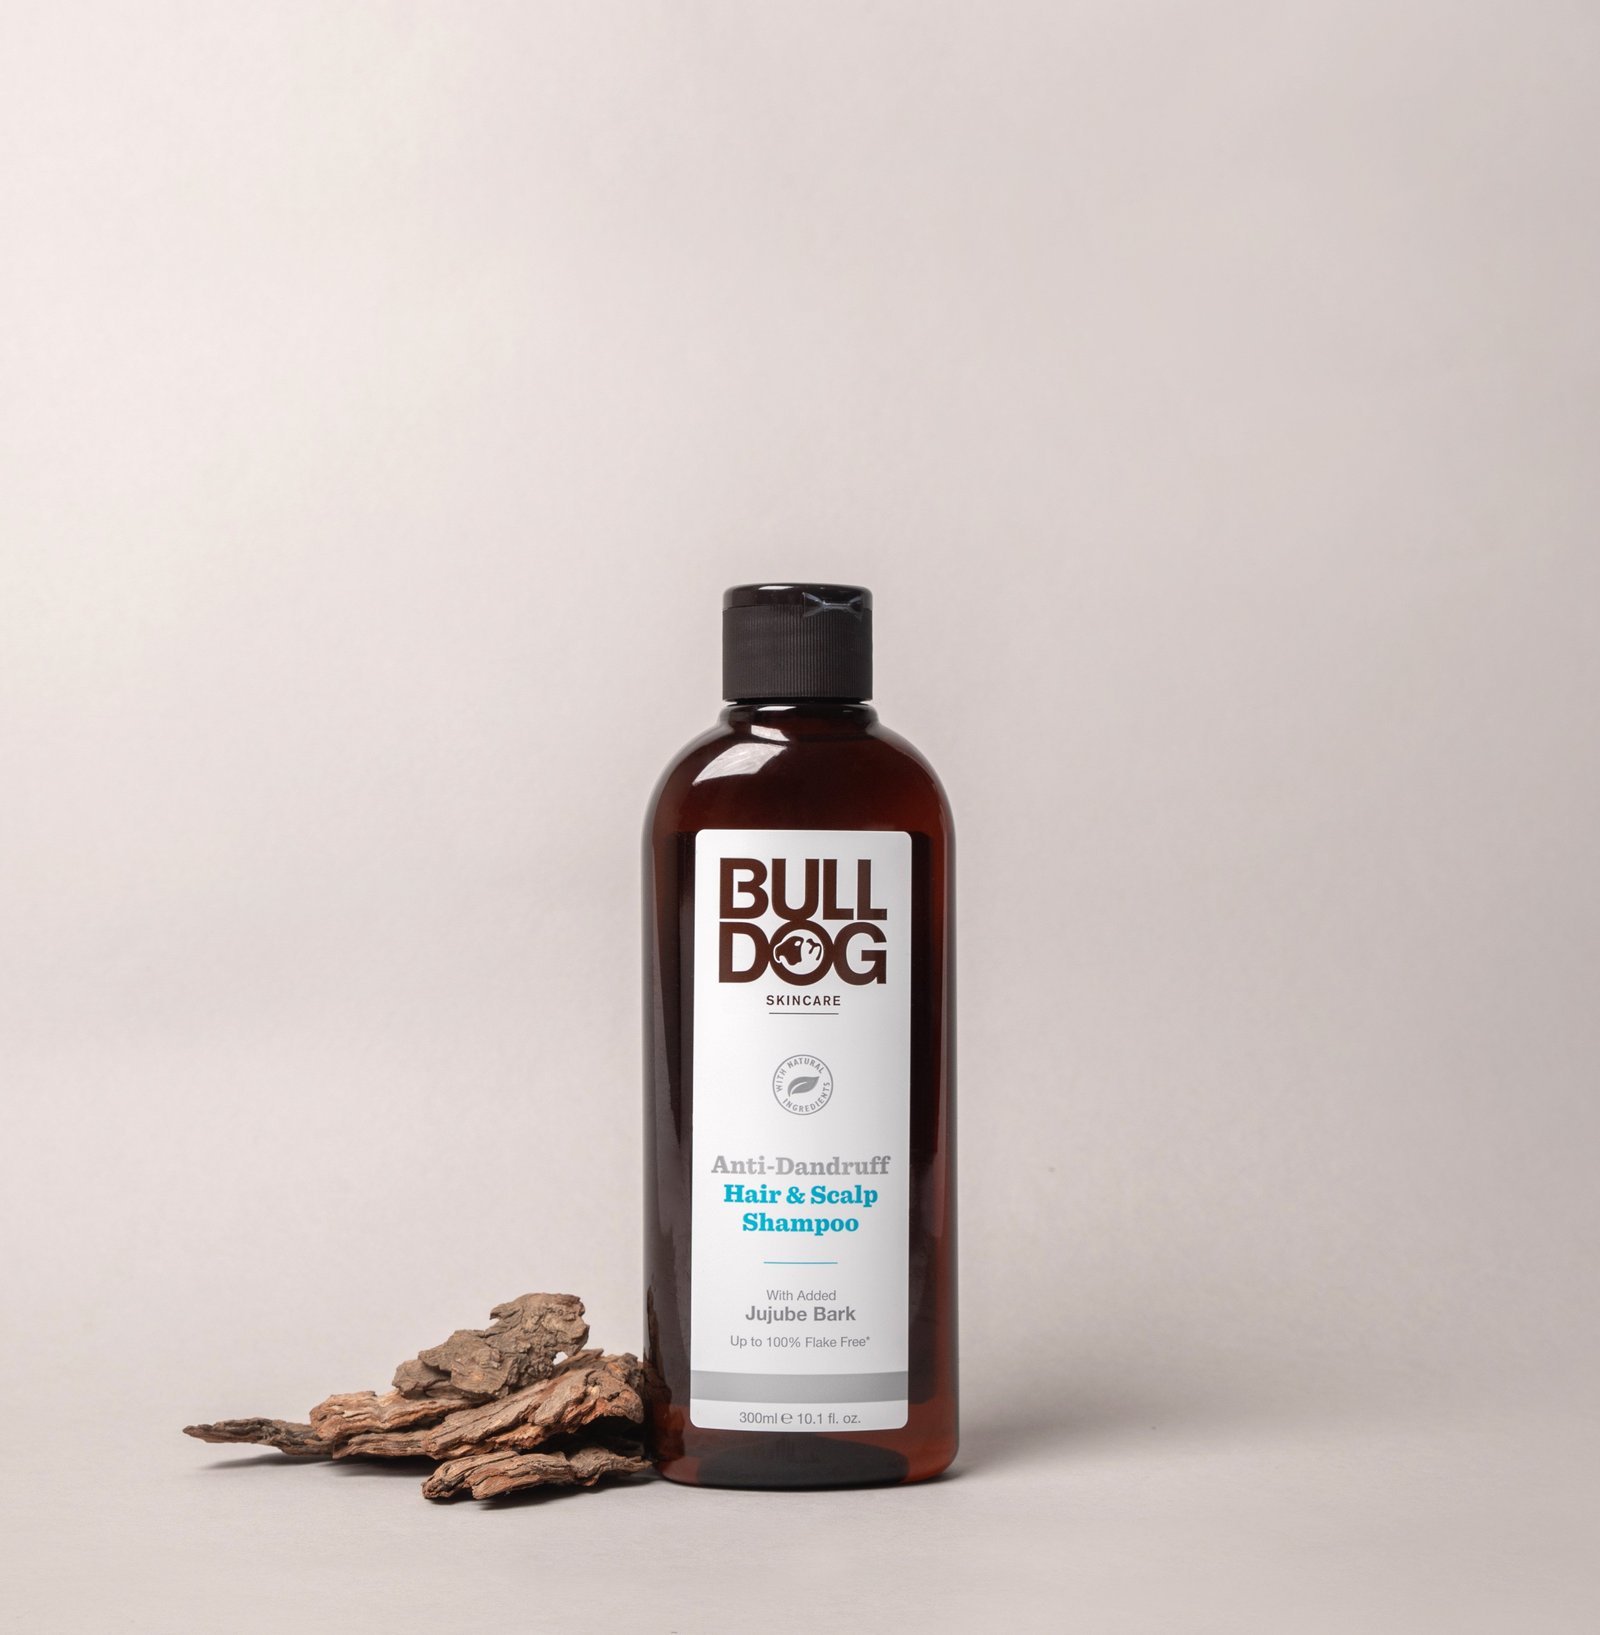 Bulldog Anti-Dandruff Hair & Scalp Schampoo 300 ml